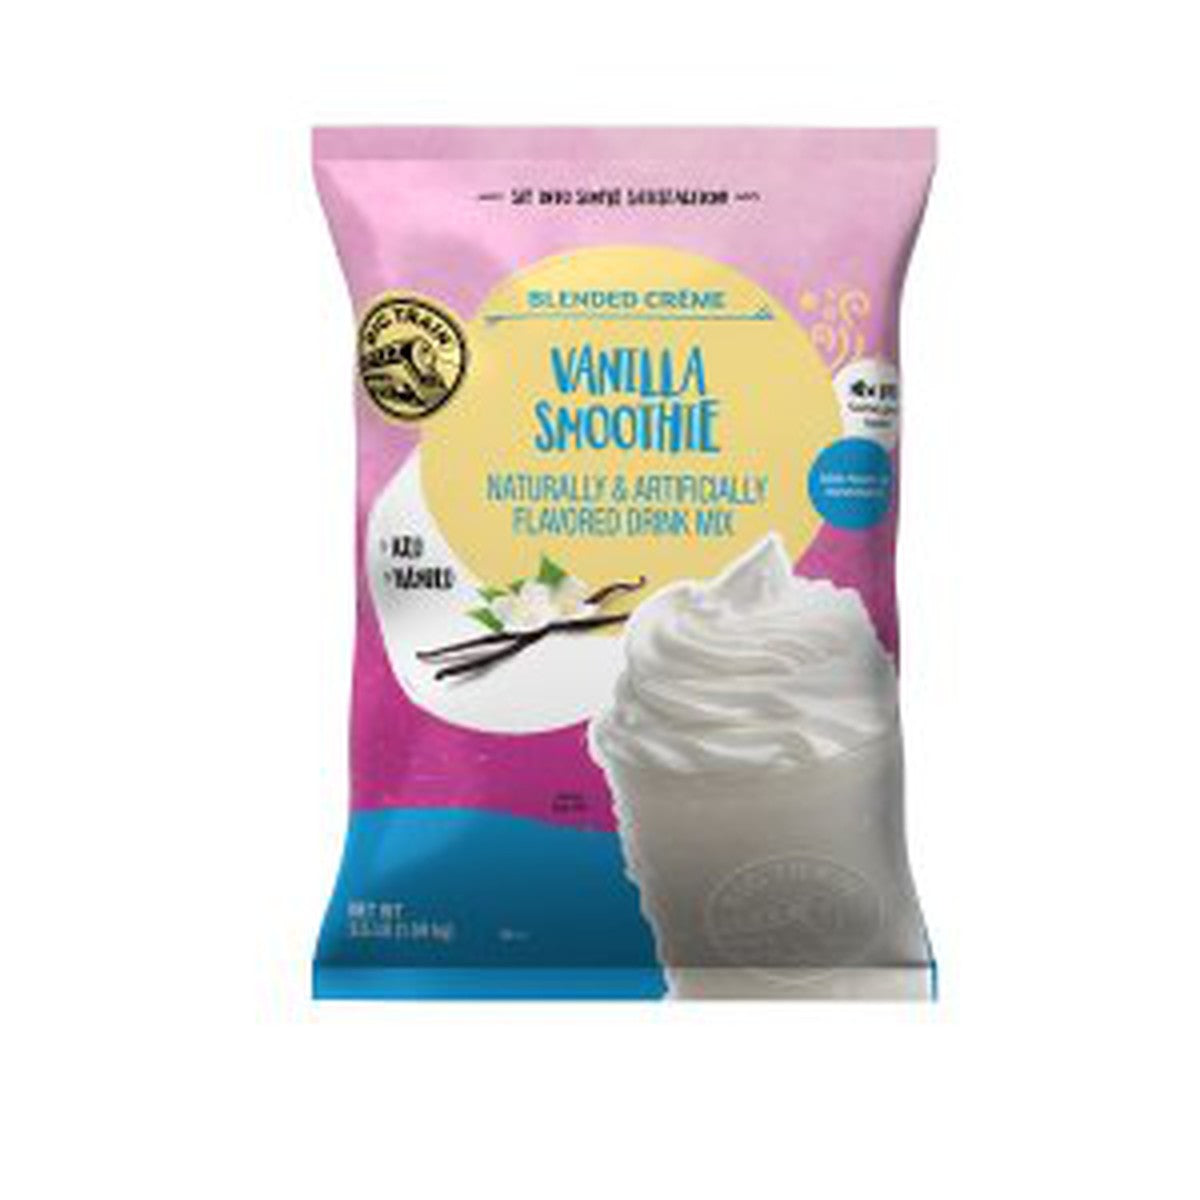 Big Train Vanilla Smoothie Mix 3.5lb Bag